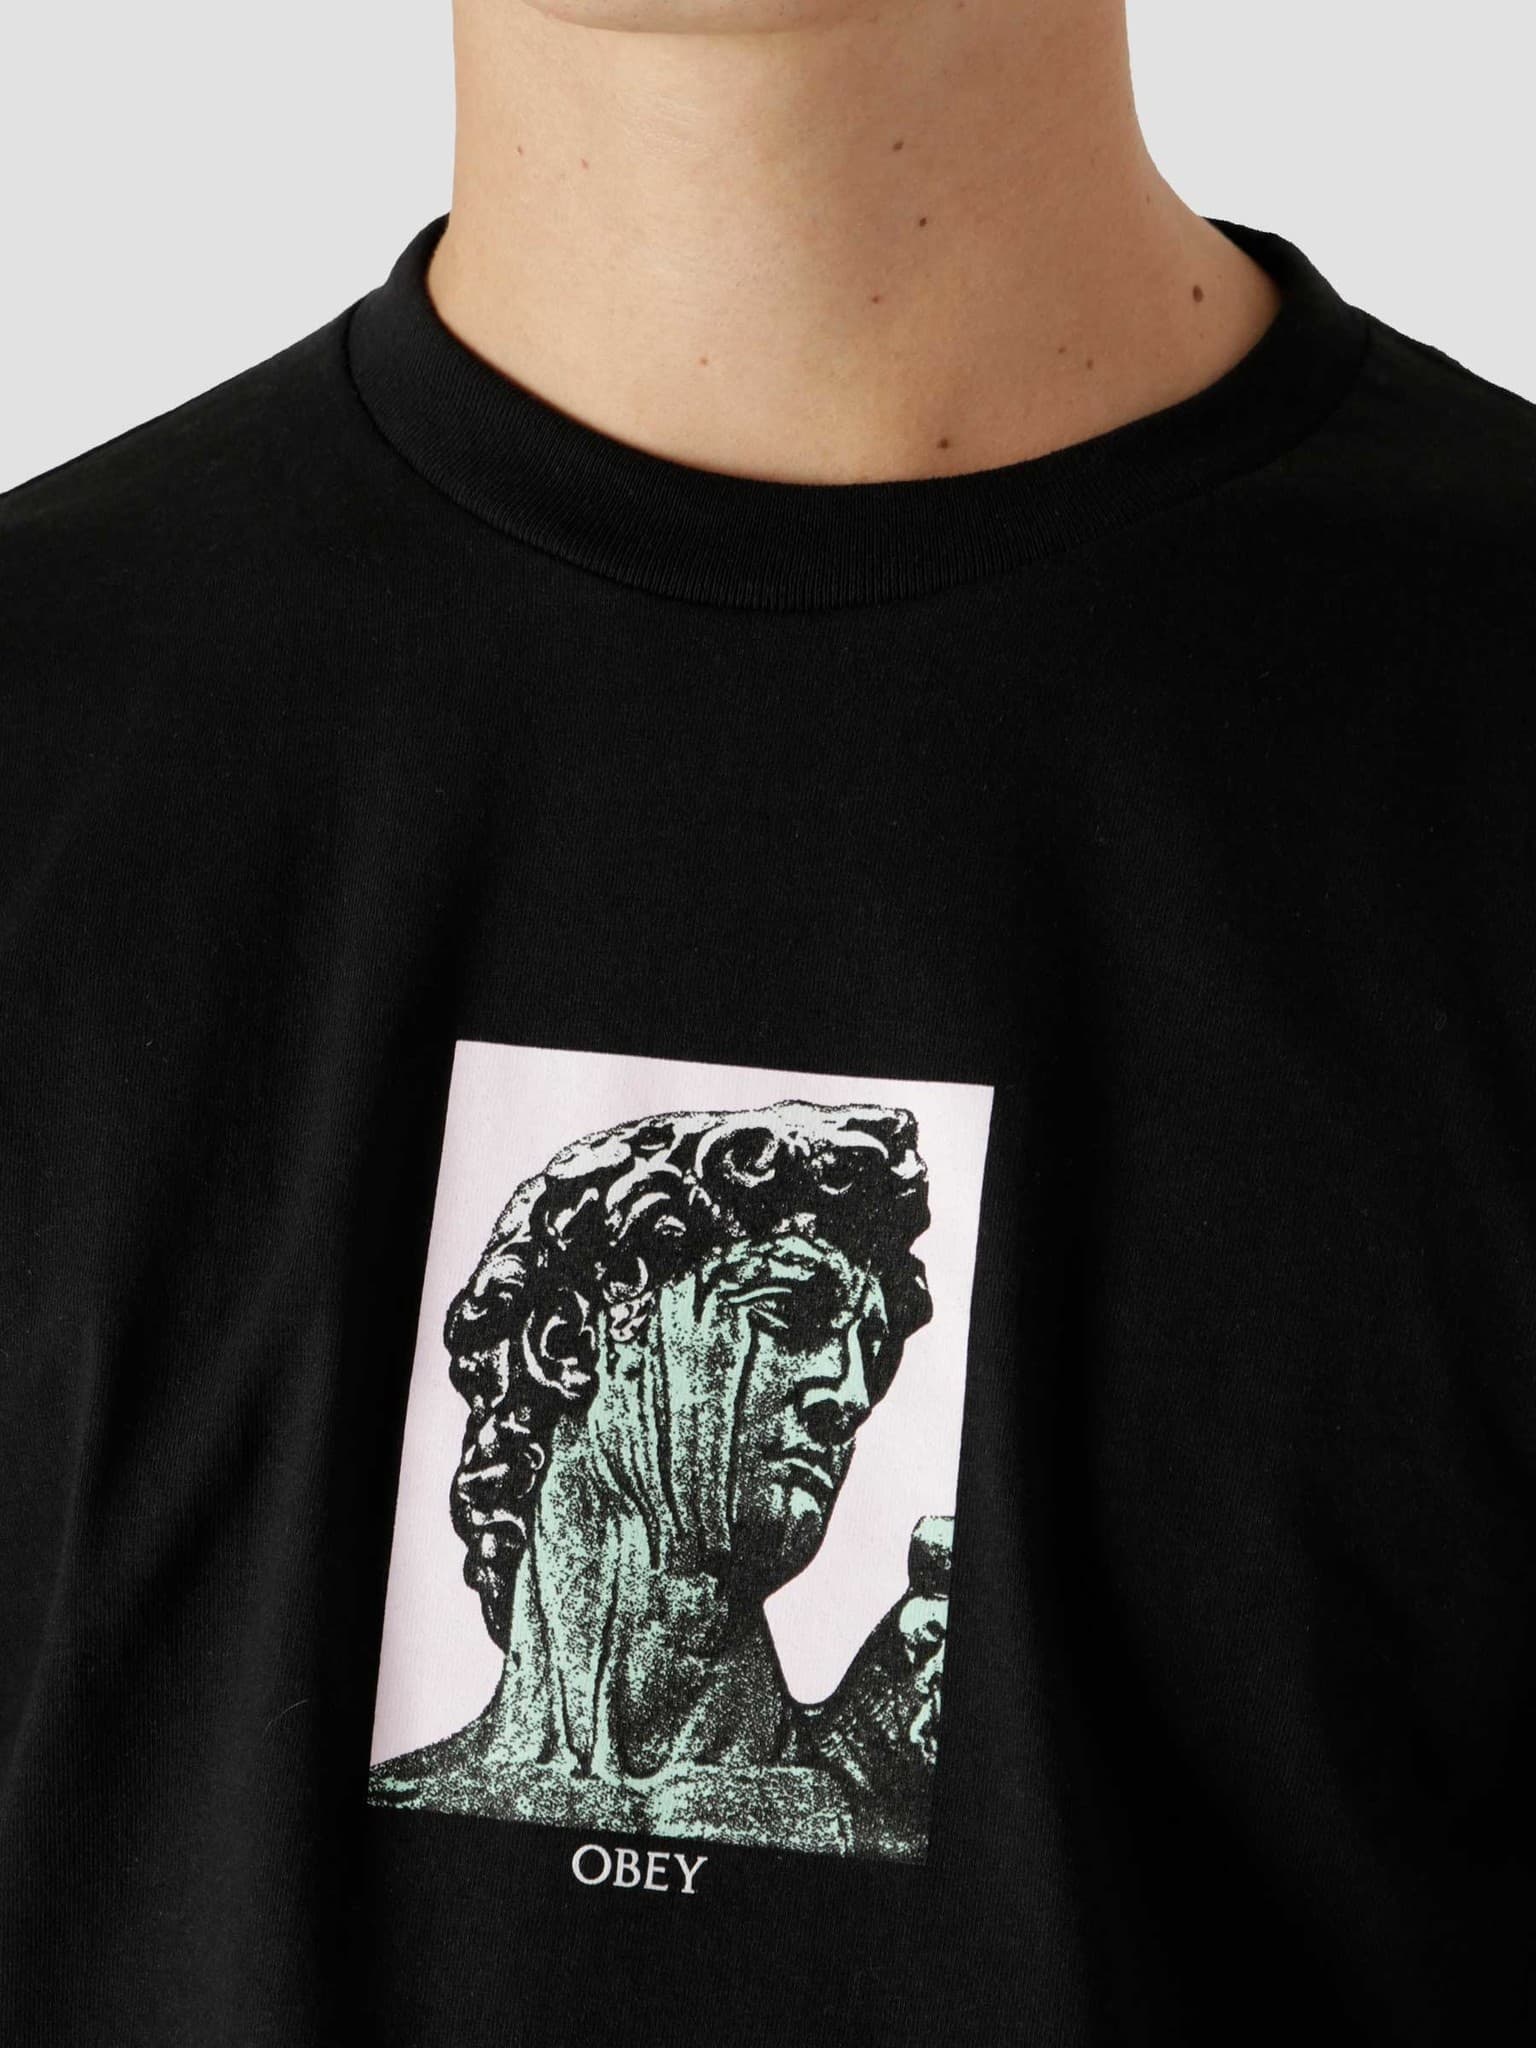 Rome Classic T-Shirt Black 165262770